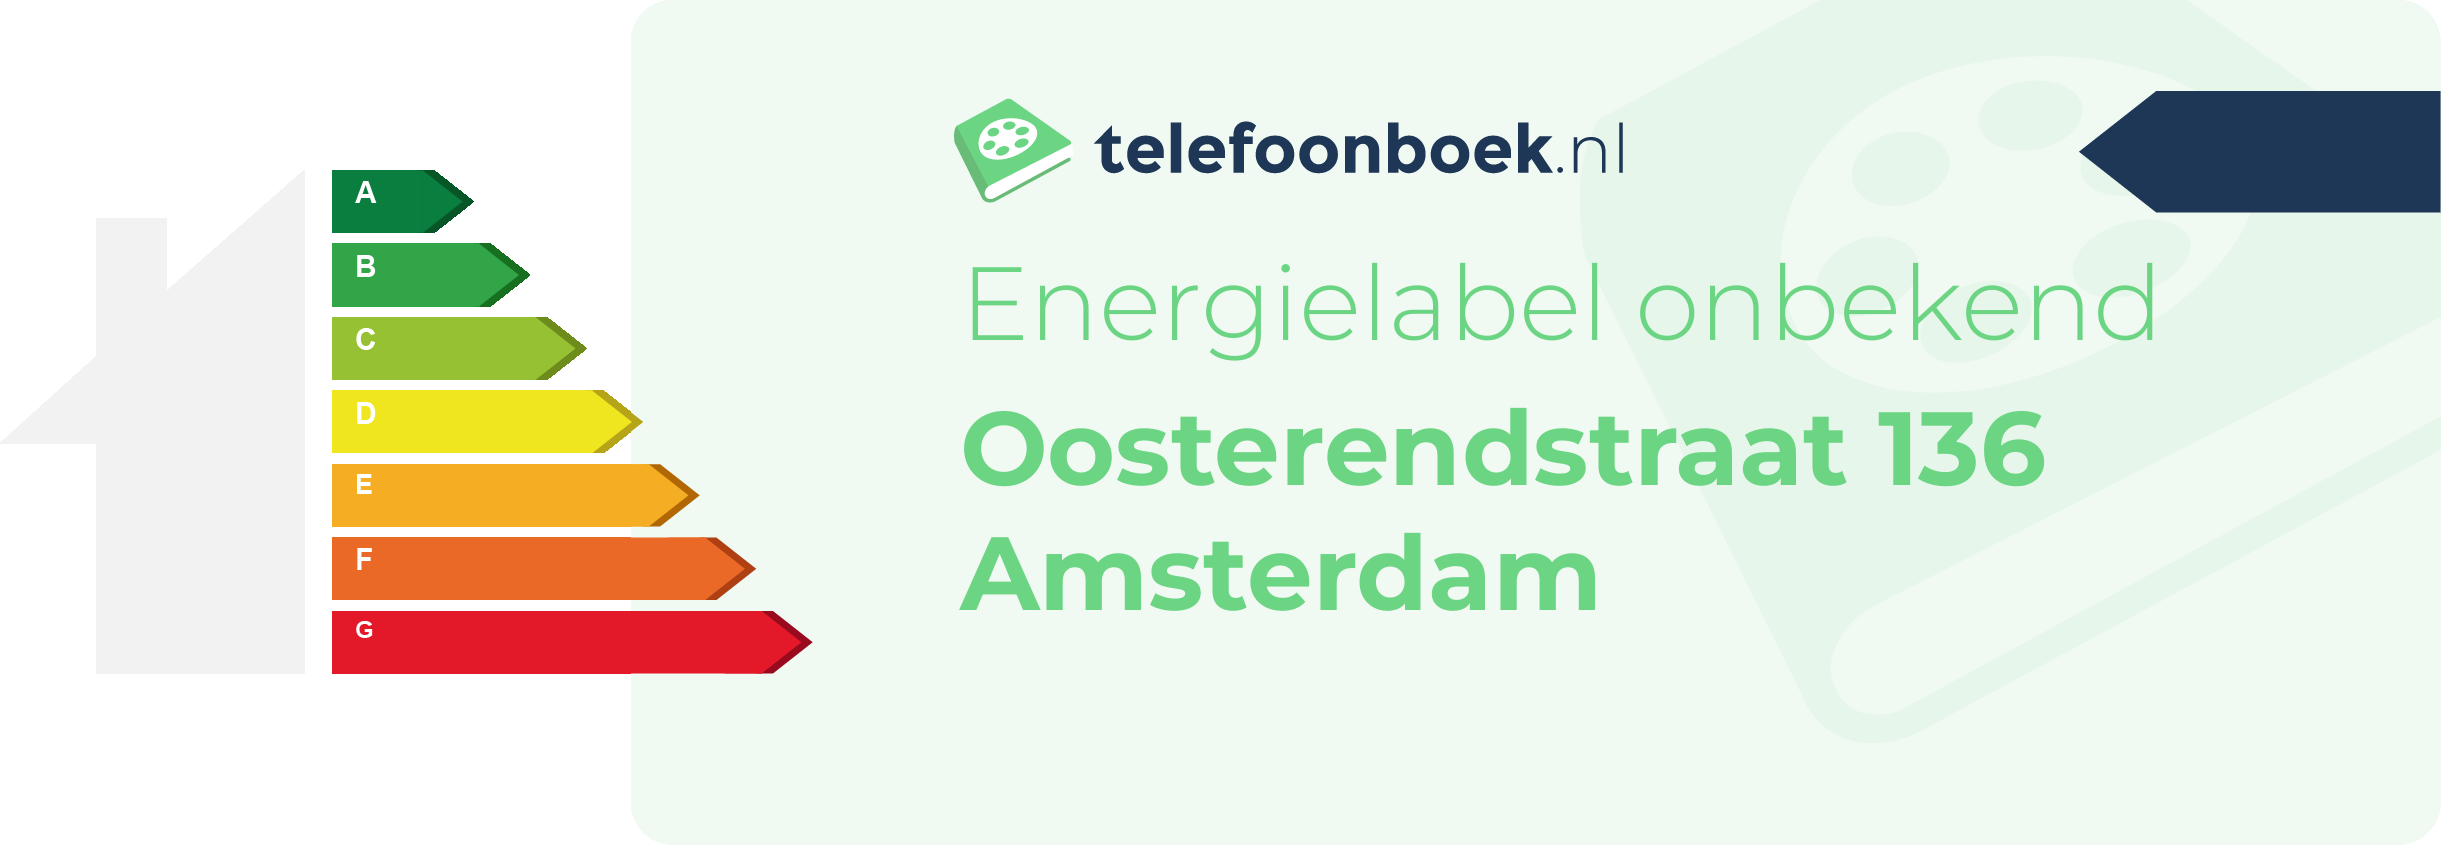 Energielabel Oosterendstraat 136 Amsterdam